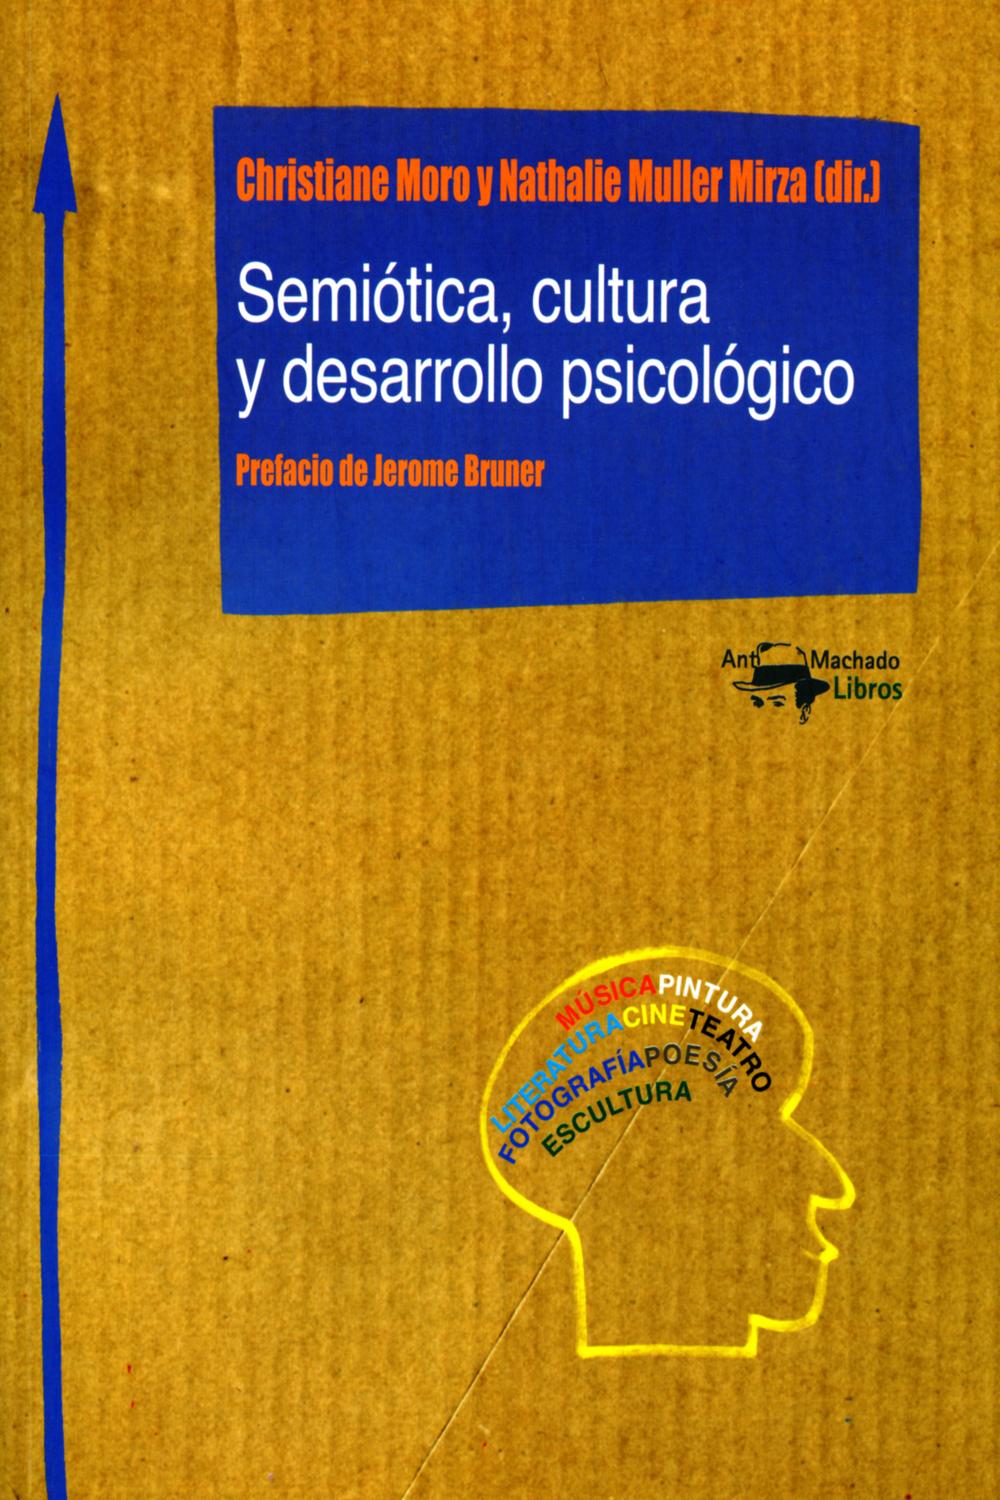 Semiótica, cultura y desarrollo psicológico - Christiane Moro, Nathalie Muller Mirza